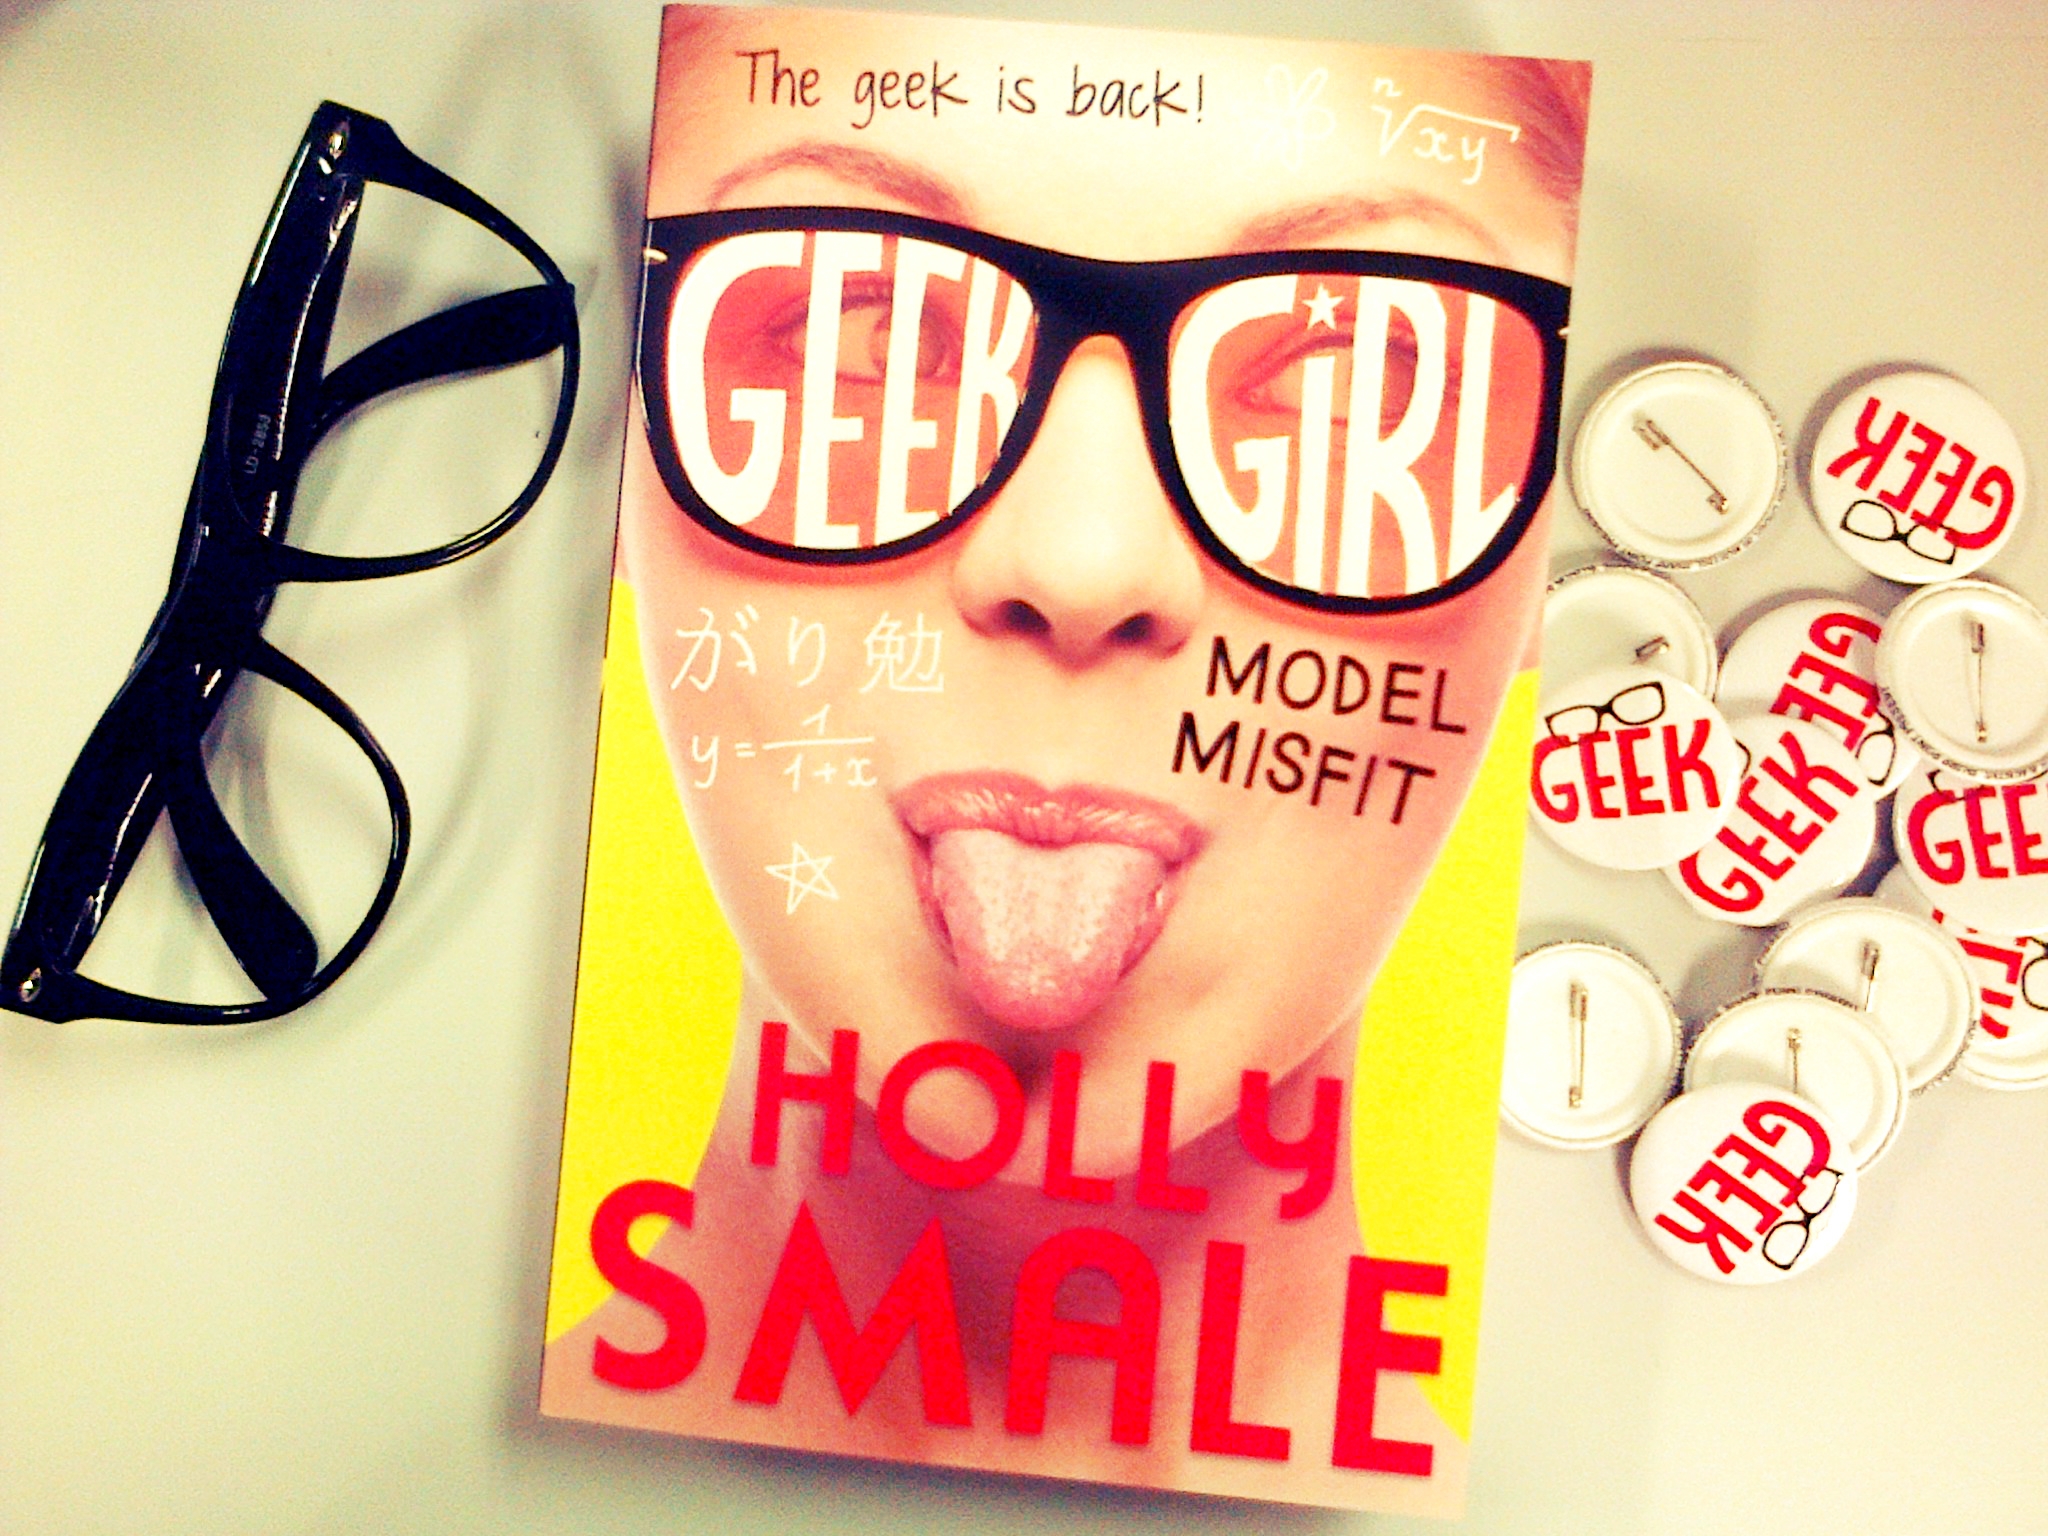 Geek insider, geekinsider, geekinsider. Com,, the geeky girls’ book blog: 'model misfit', lady geek